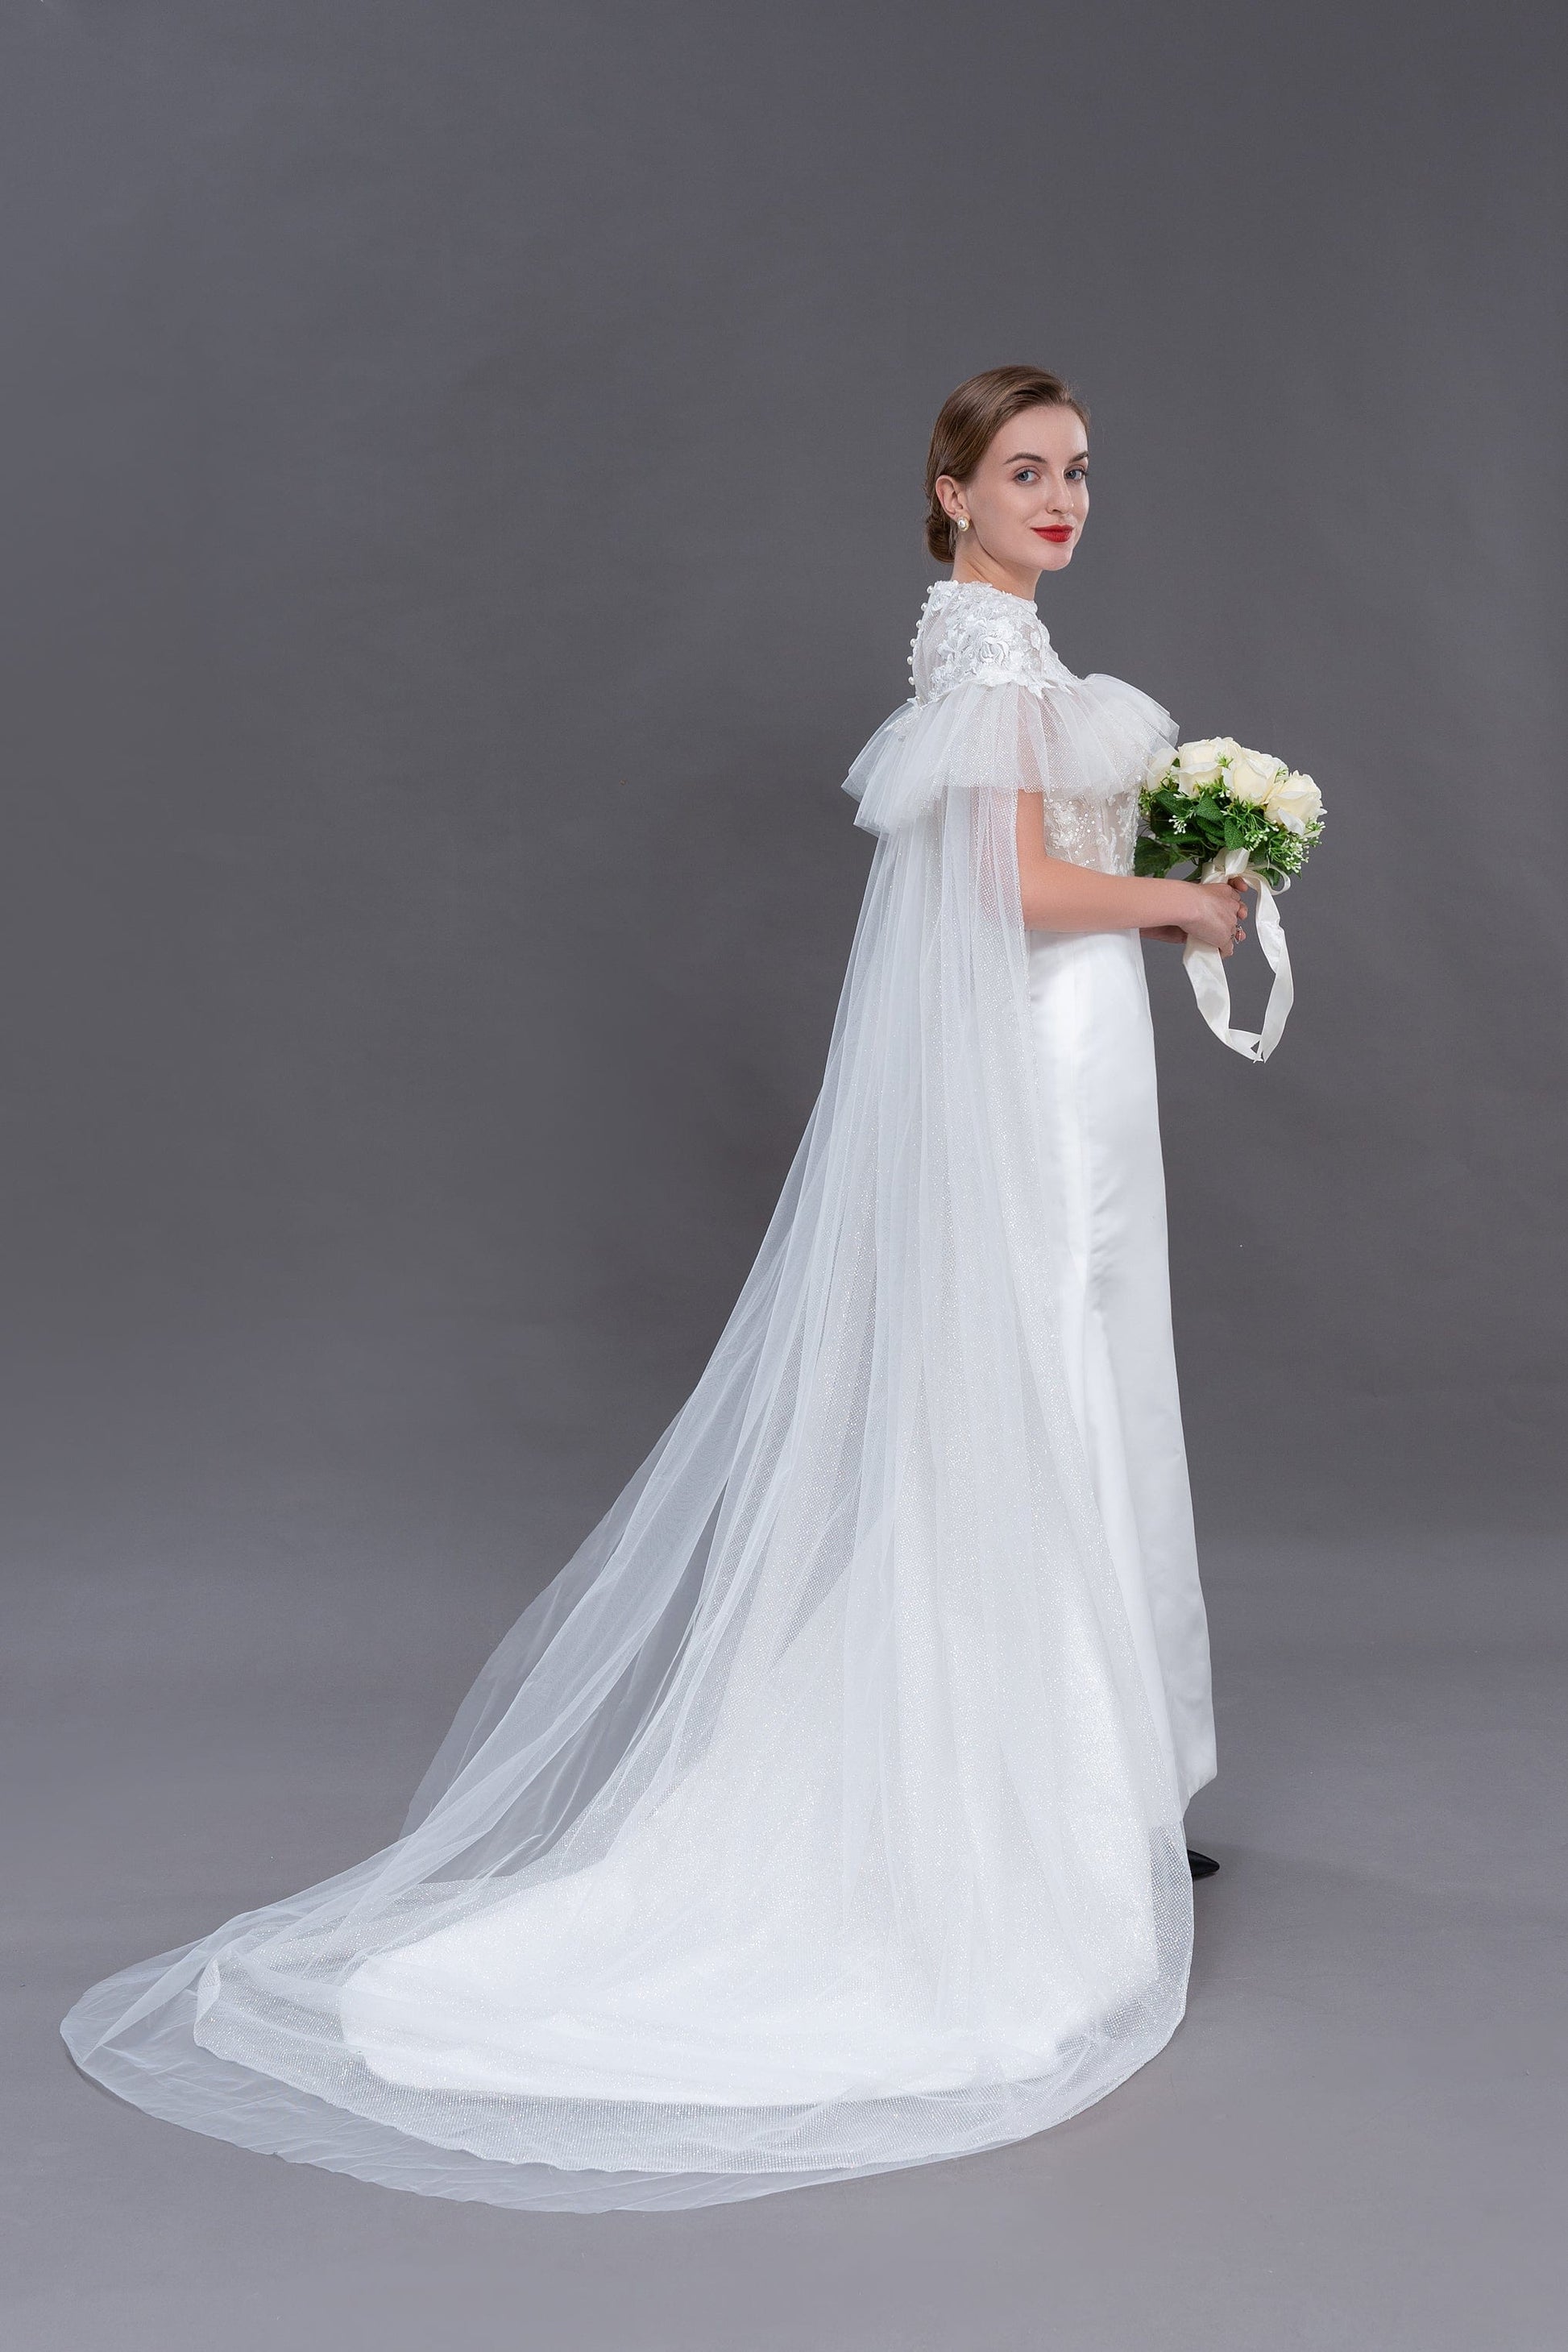 Bieauli  veil ivor wedding cape, elegant lace, tulle cape veil, bridal cape, bridal robe, sheer cover-up,detachable train